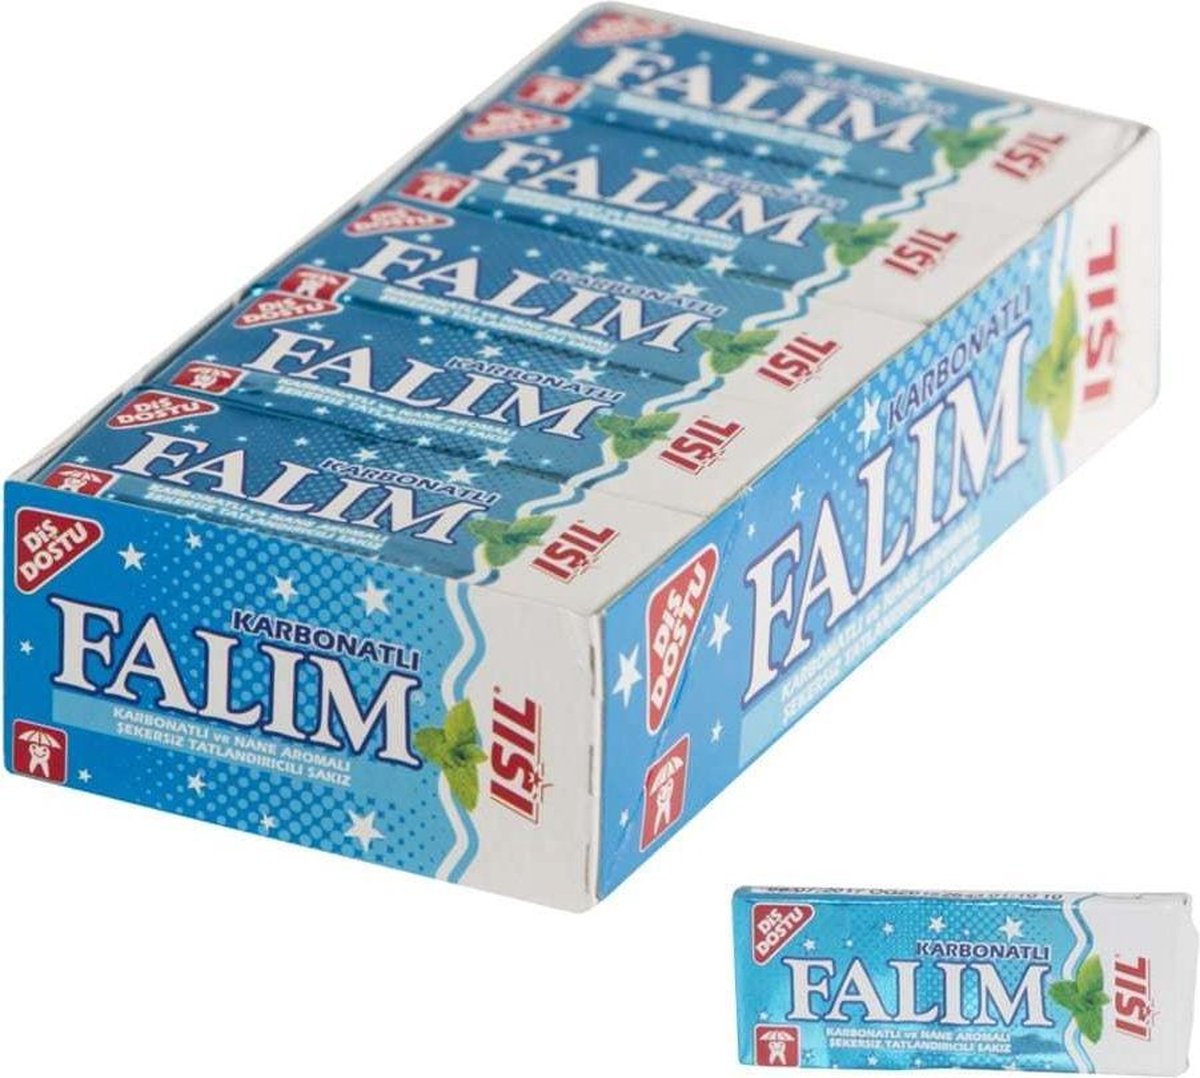 Falim Karbonatli chewing-gum 20x5 pièces (100 pièces chewing-gum